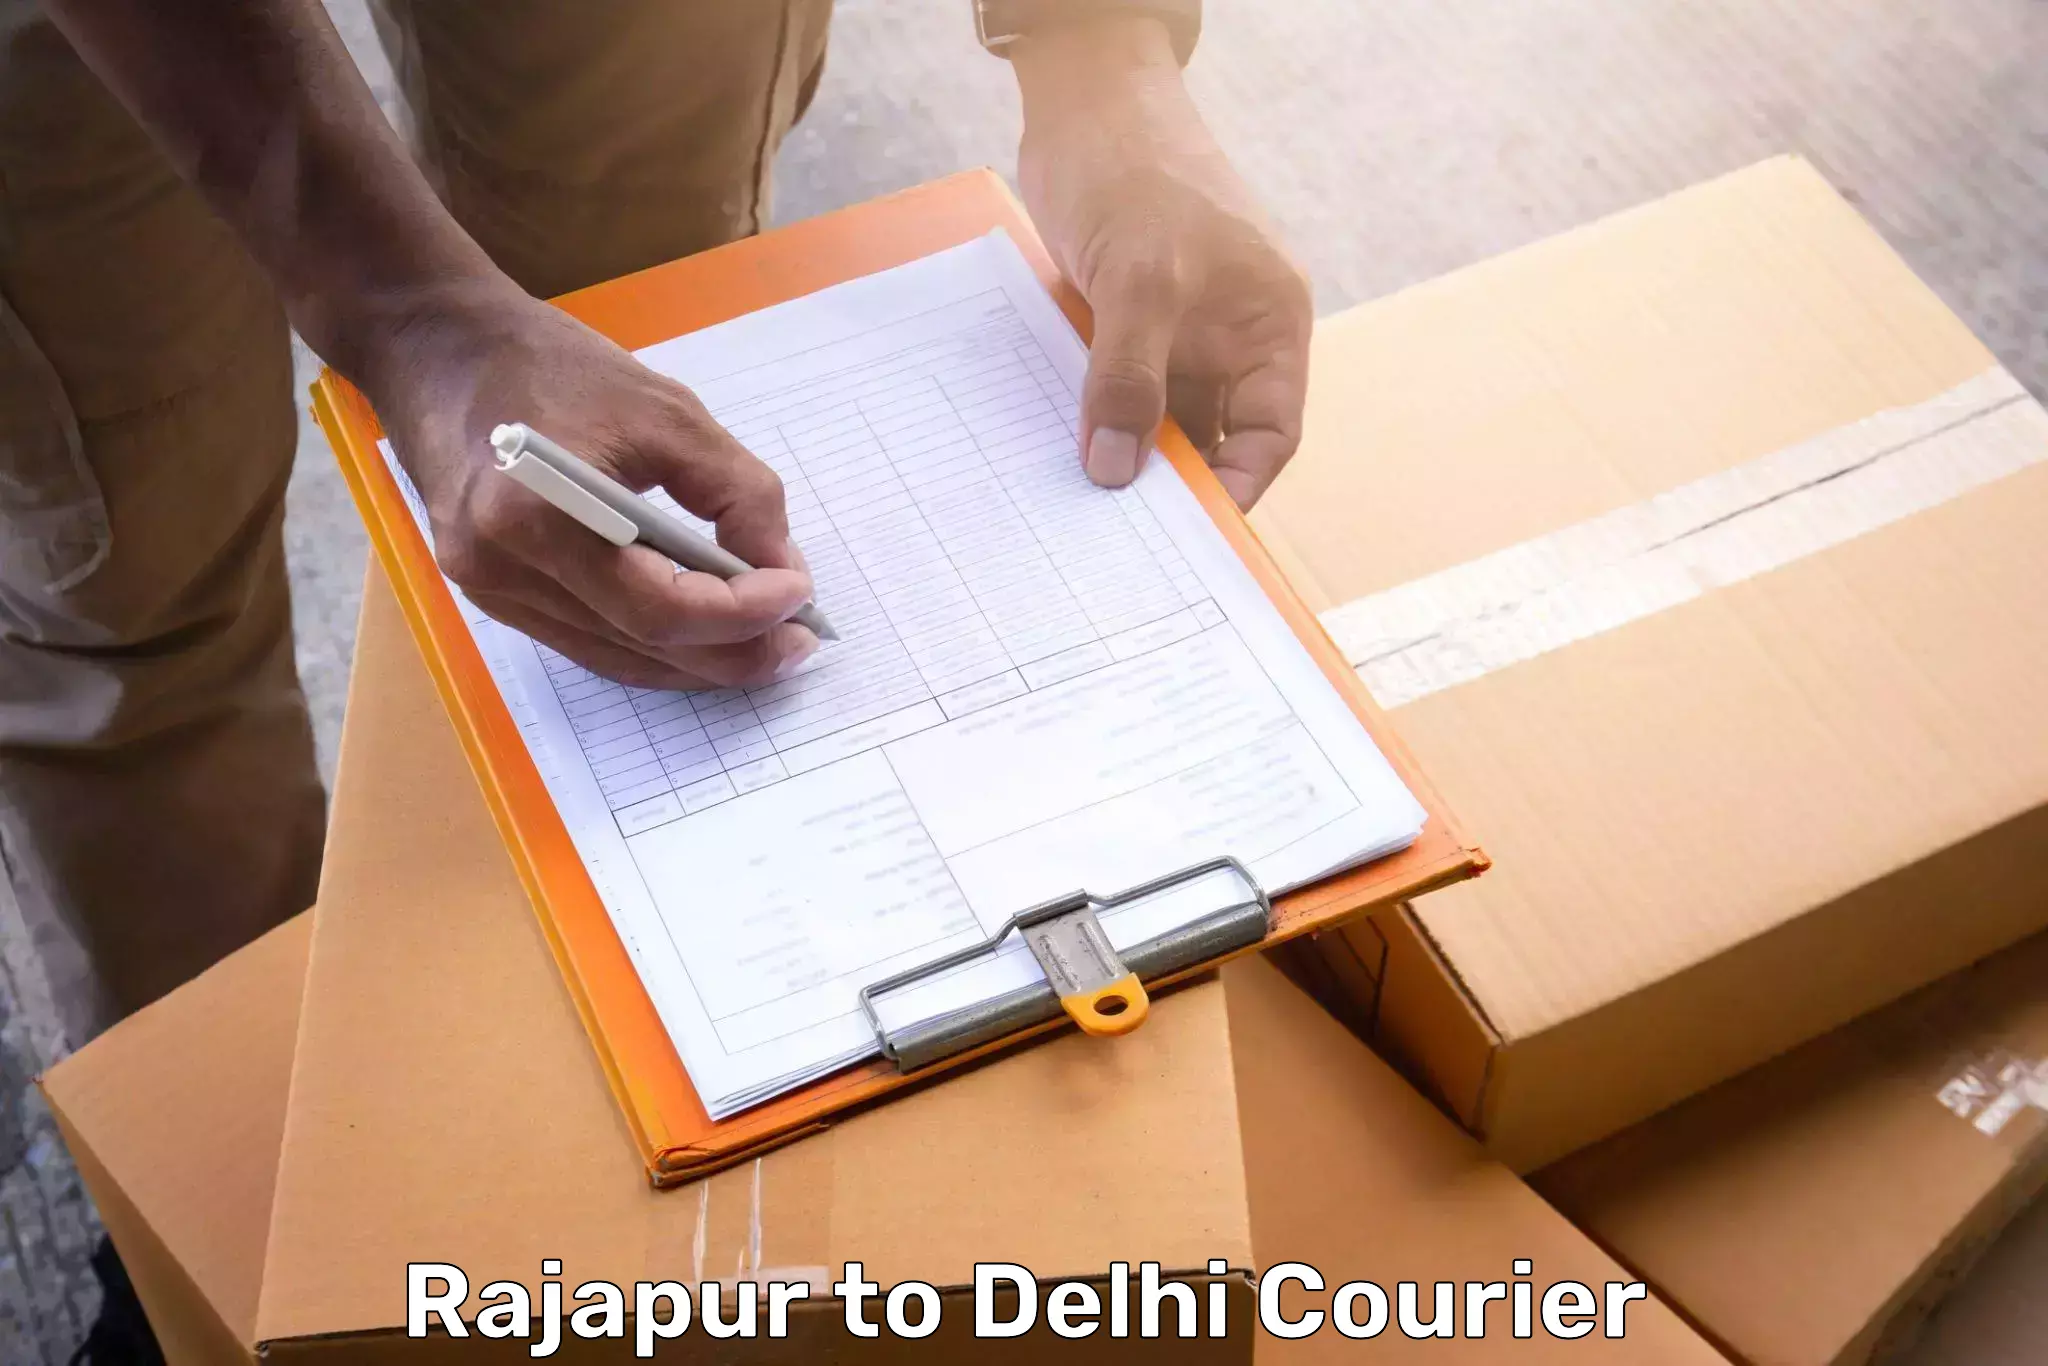 Luggage shipment tracking Rajapur to Delhi